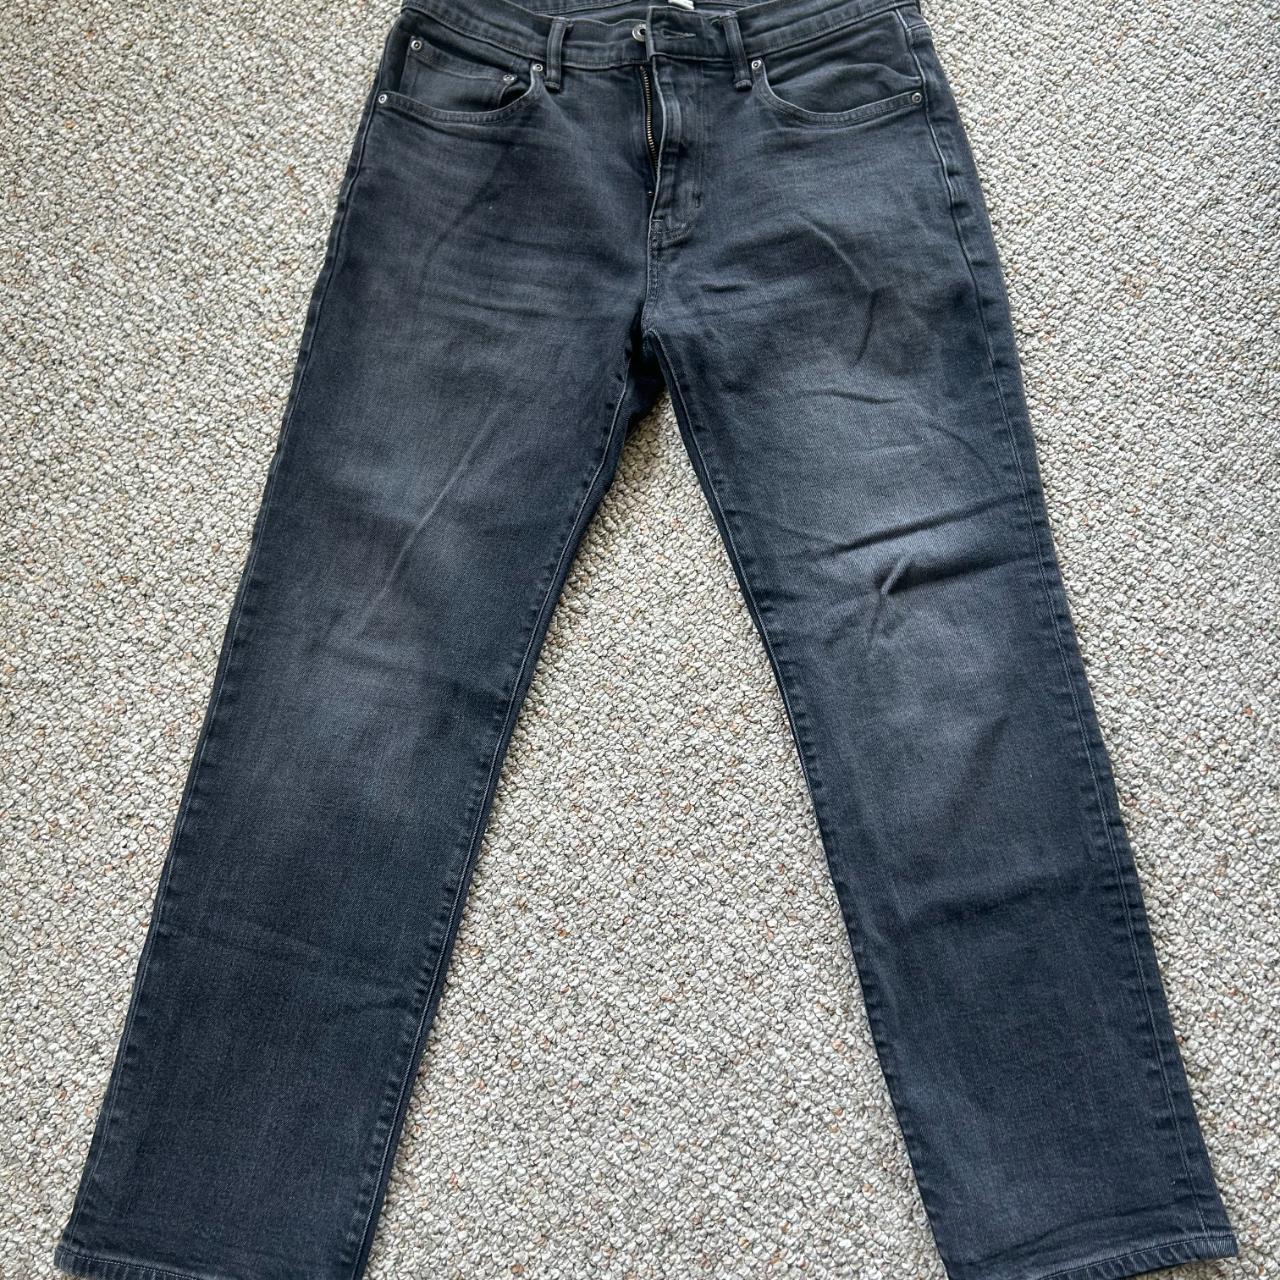 32 x 30 Mutual Weave black jeans In great... - Depop